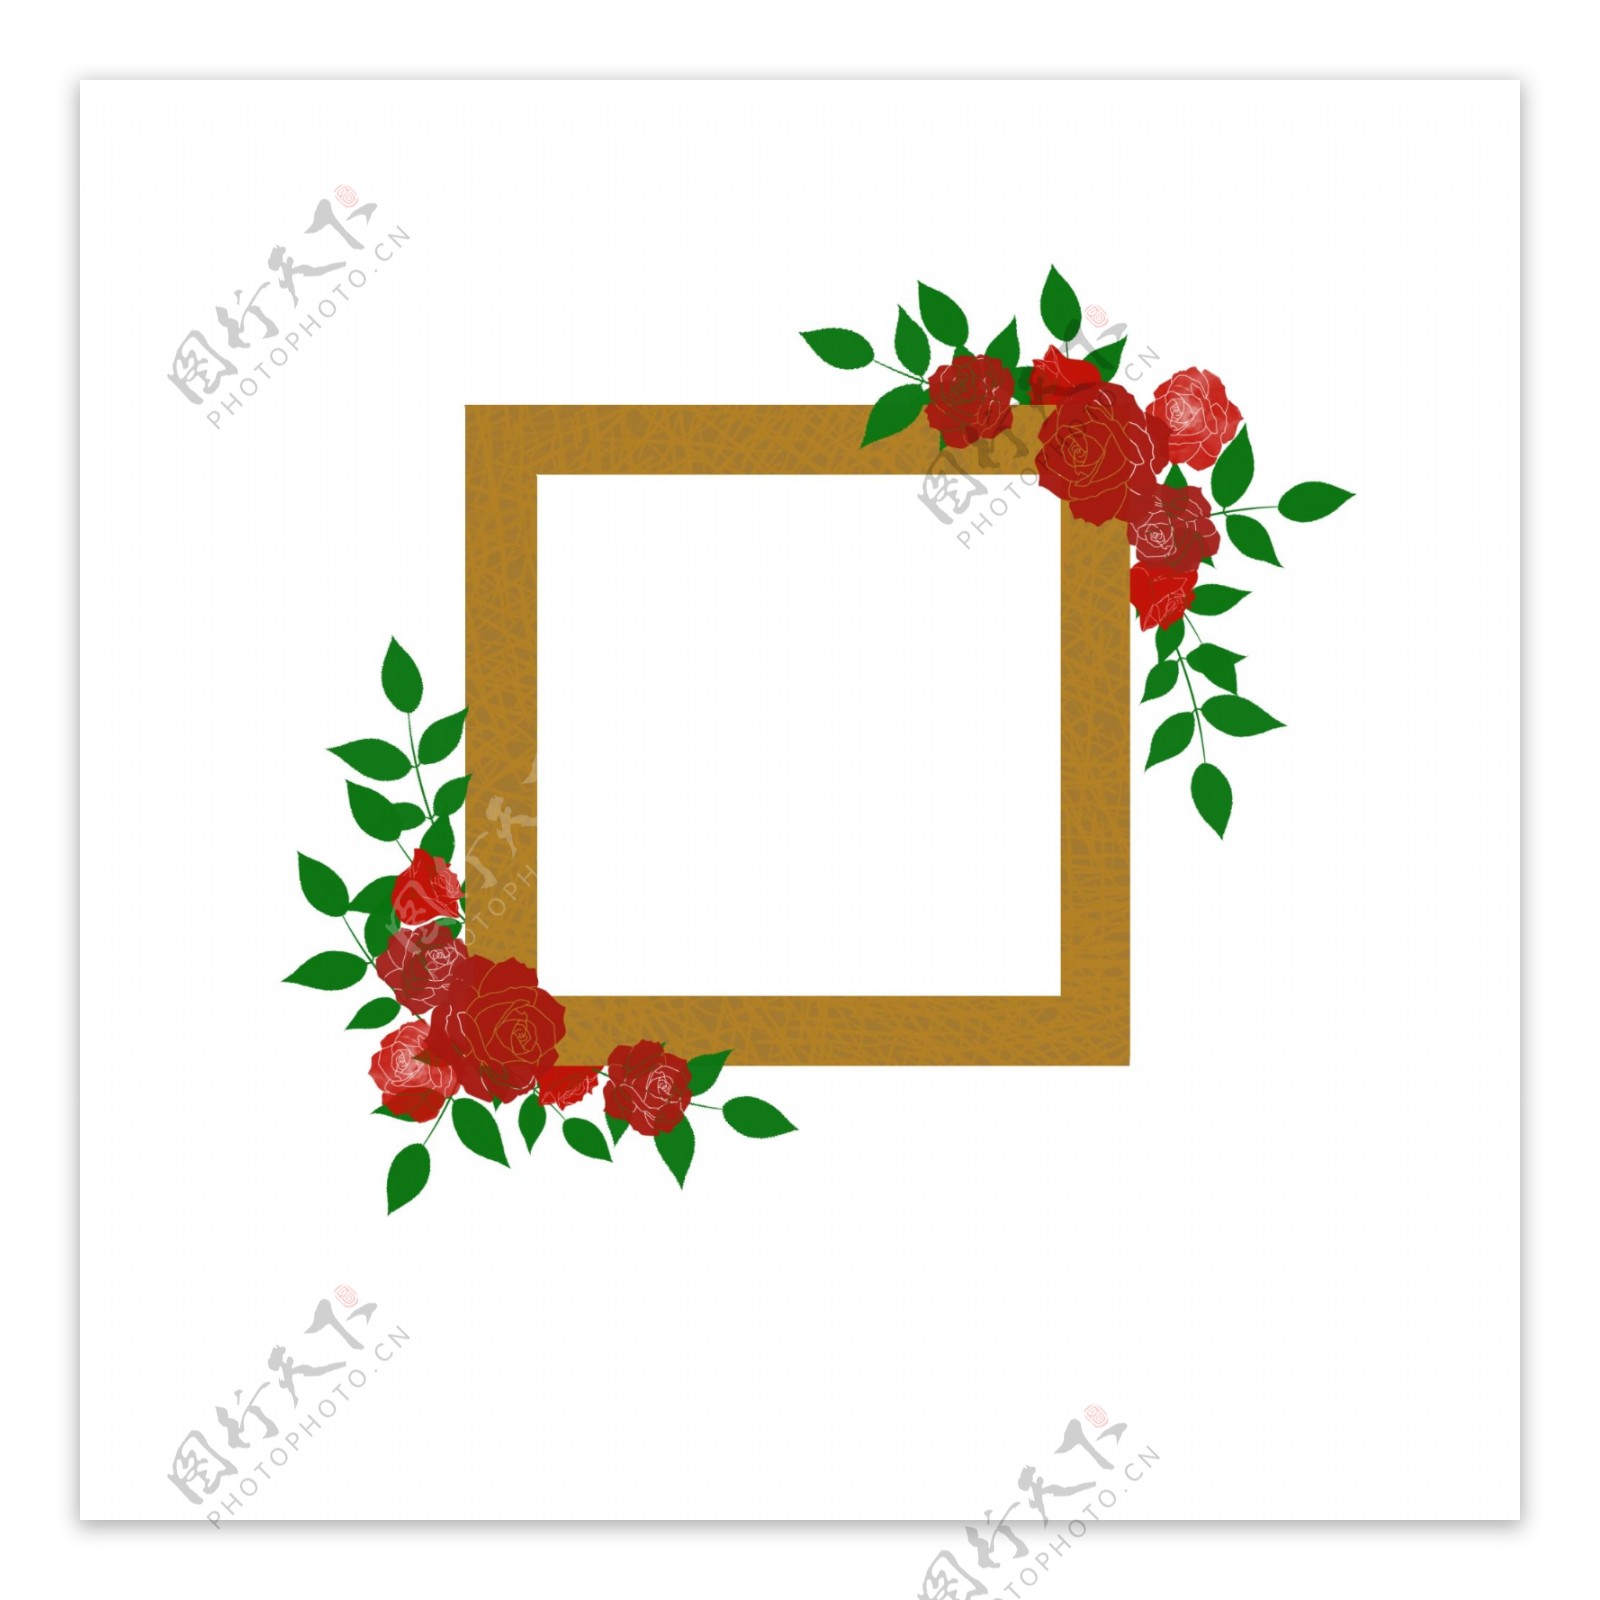 复古风格红玫瑰花环花框